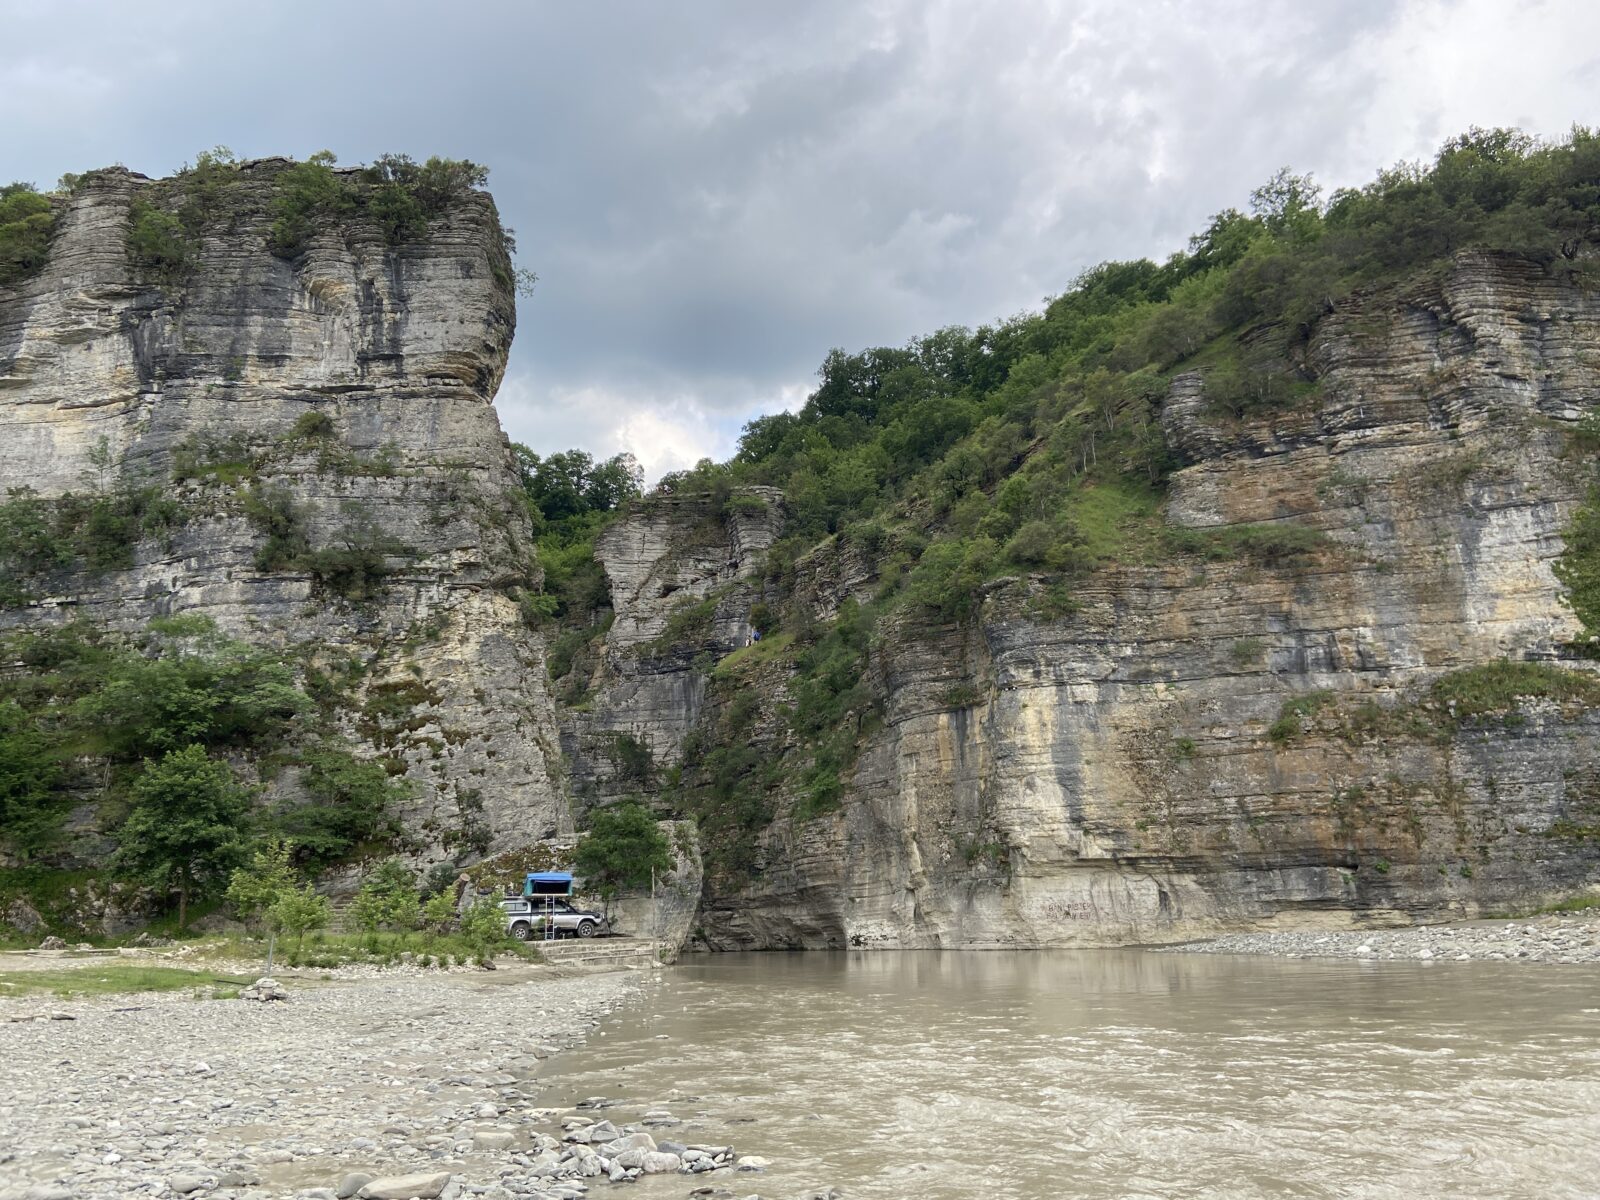 Unterwegs in Albanien: Osum-Canyon